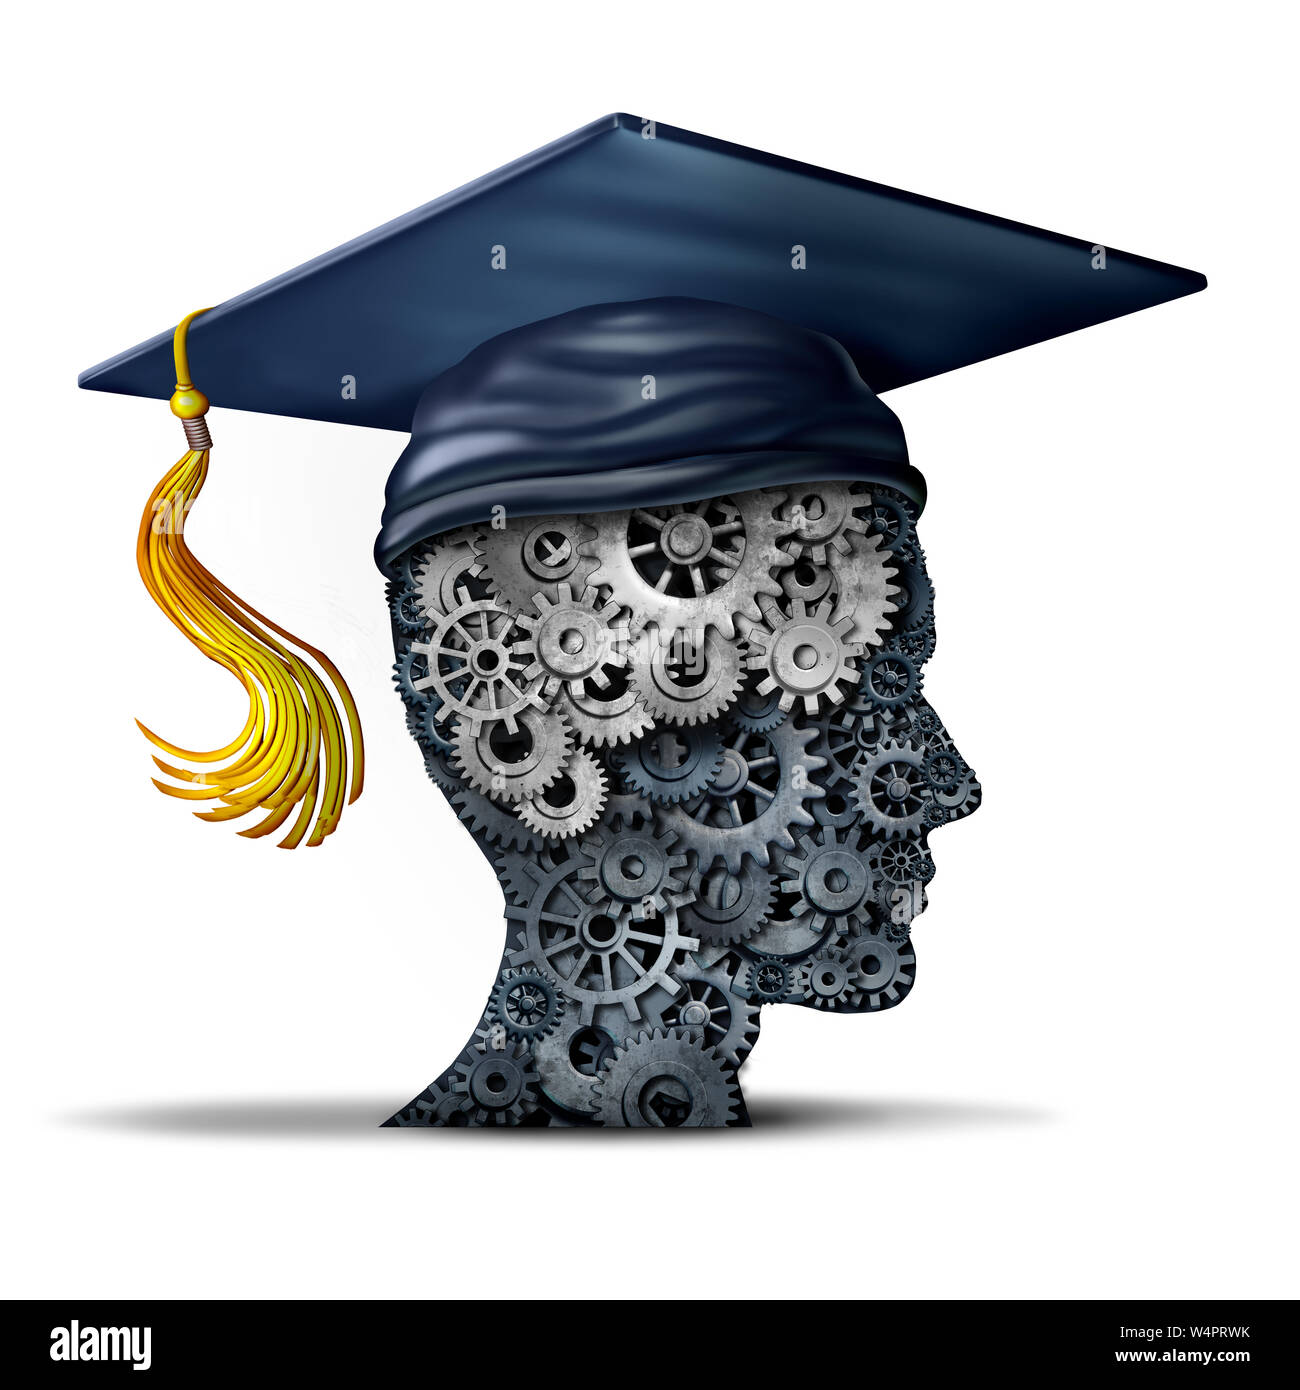 Formation d'entreprise concept de l'éducation et de compétences professionnelles ou de compétences de carrière étudiant en génie et l'idée qu'une icône 3D illustration. Banque D'Images